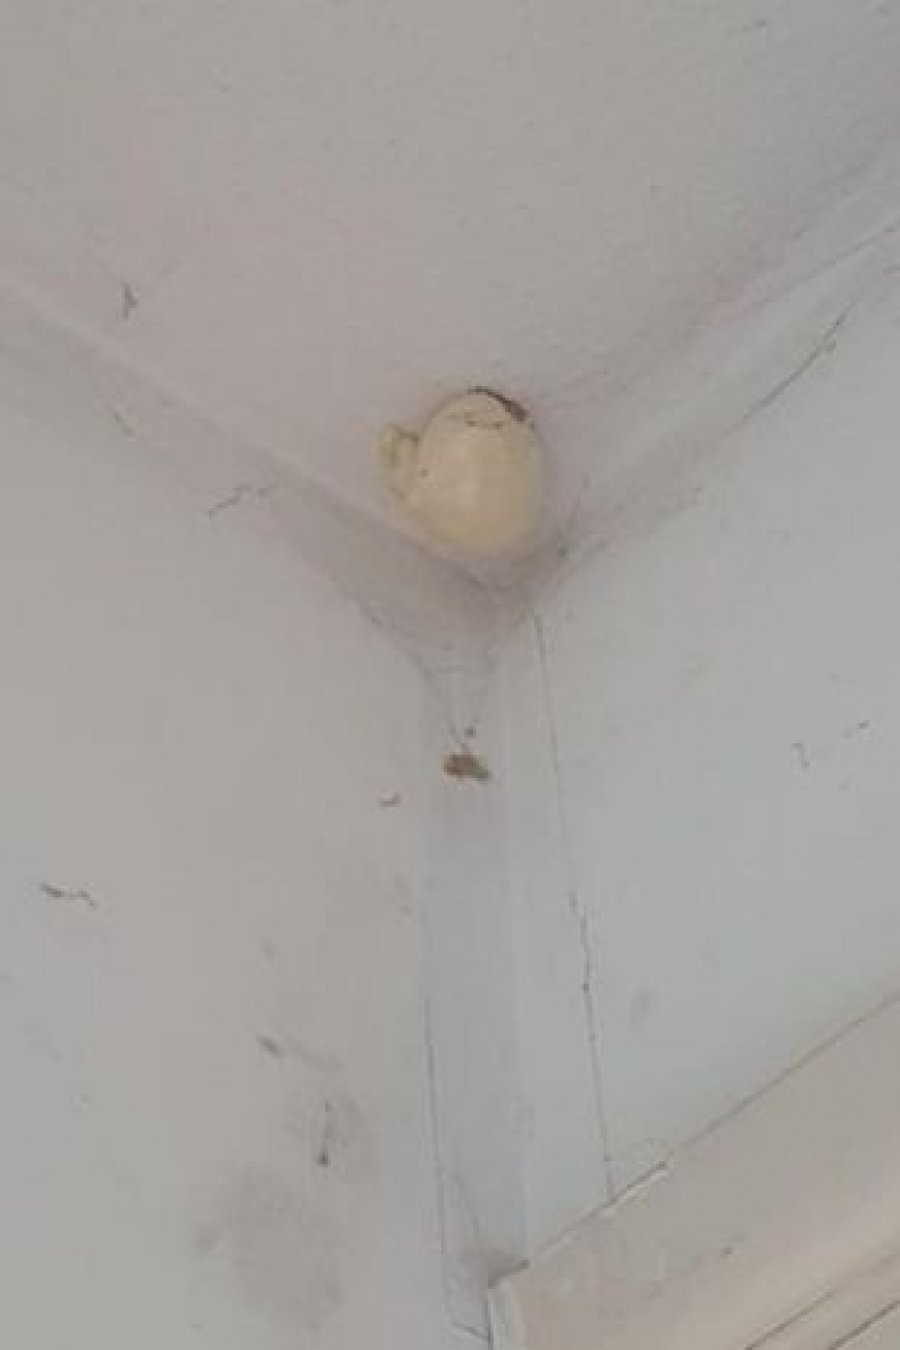  Gruaja gjen vezën misterioze në shtëpi, njerëzit e paralajmërojnë që të mos e prekë 